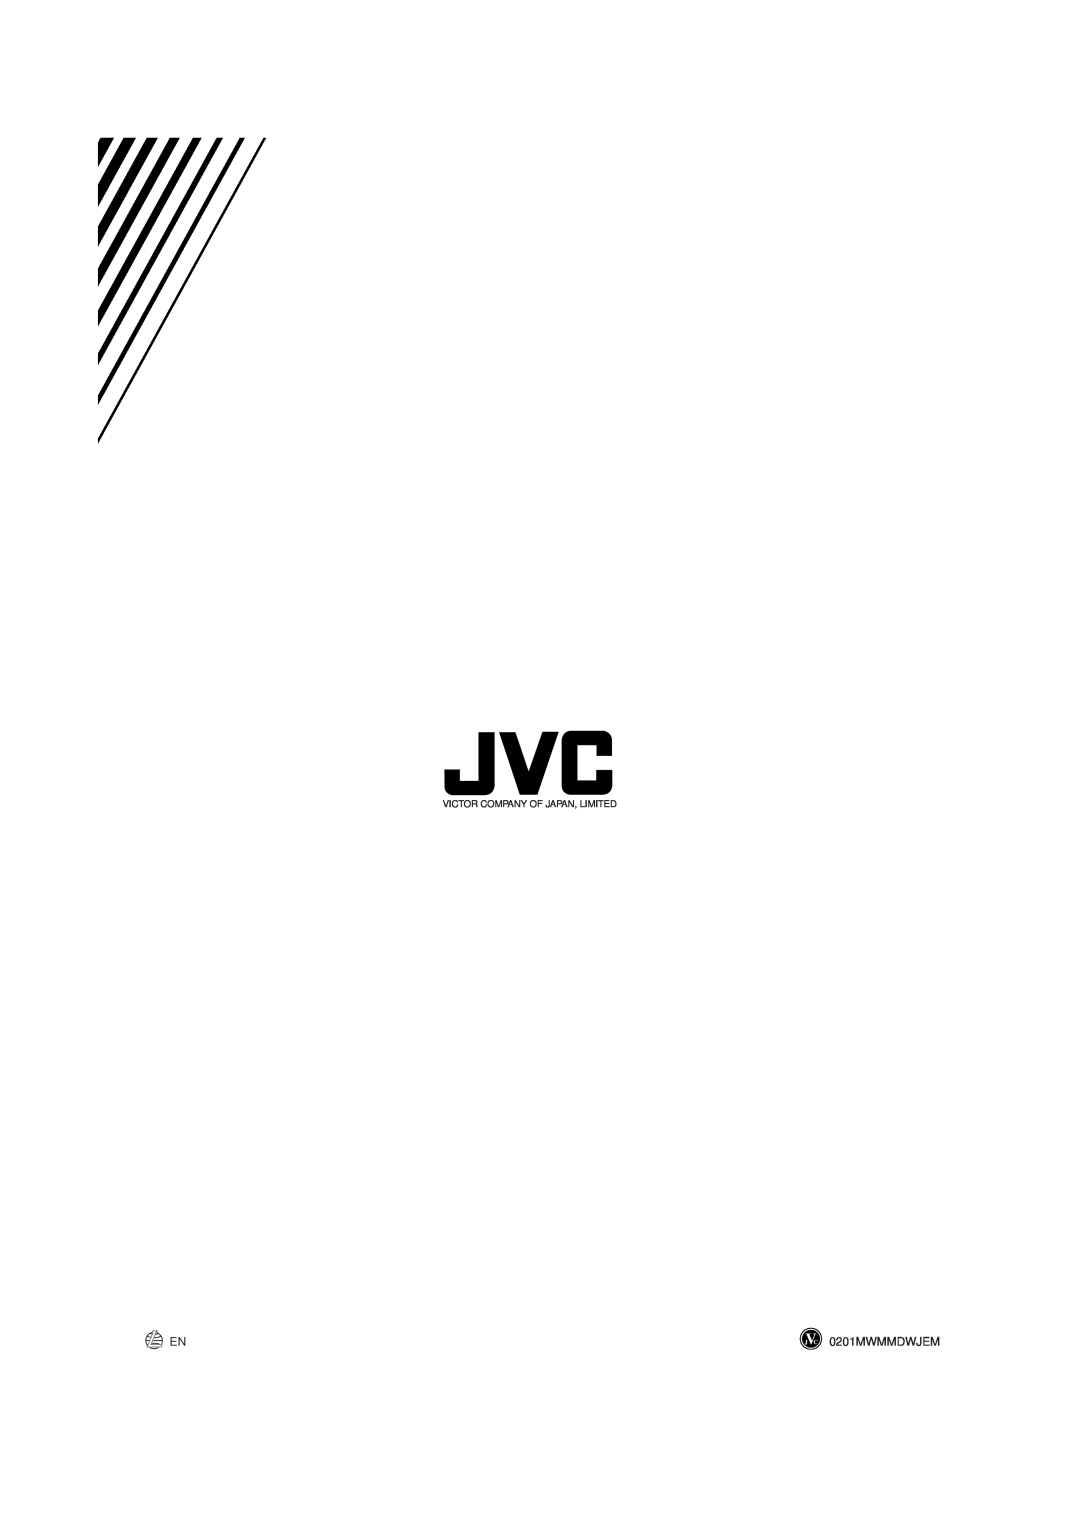 JVC CA-MXGT91R manual 0201MWMMDWJEM, Victor Company Of Japan, Limited 